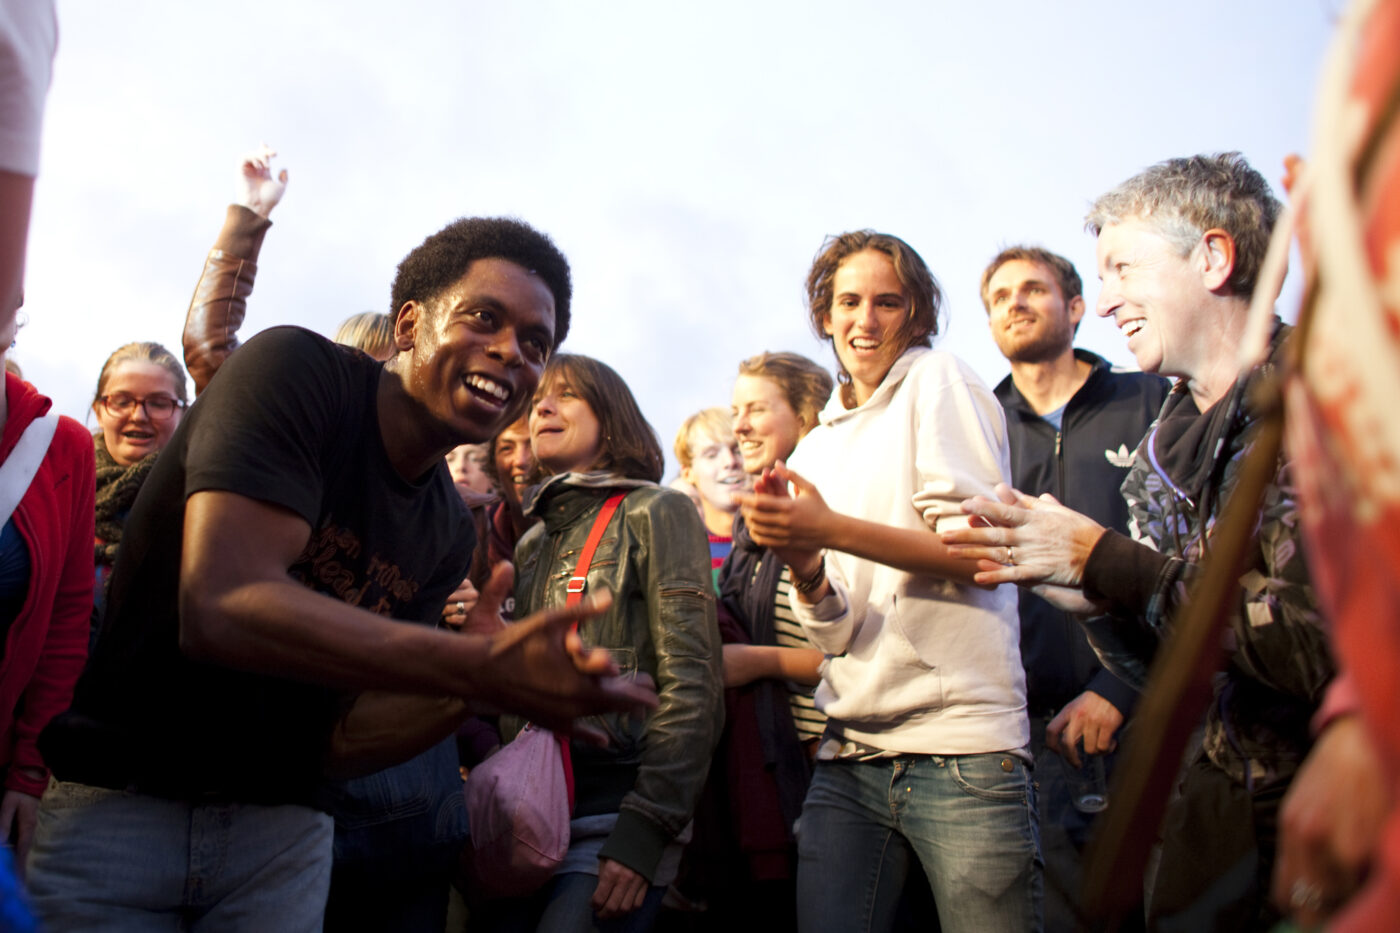 Typhoon loopt door het publiek tijdens zijn optreden op festivalterrein de Westerkeijn tijdens Oerol 2011